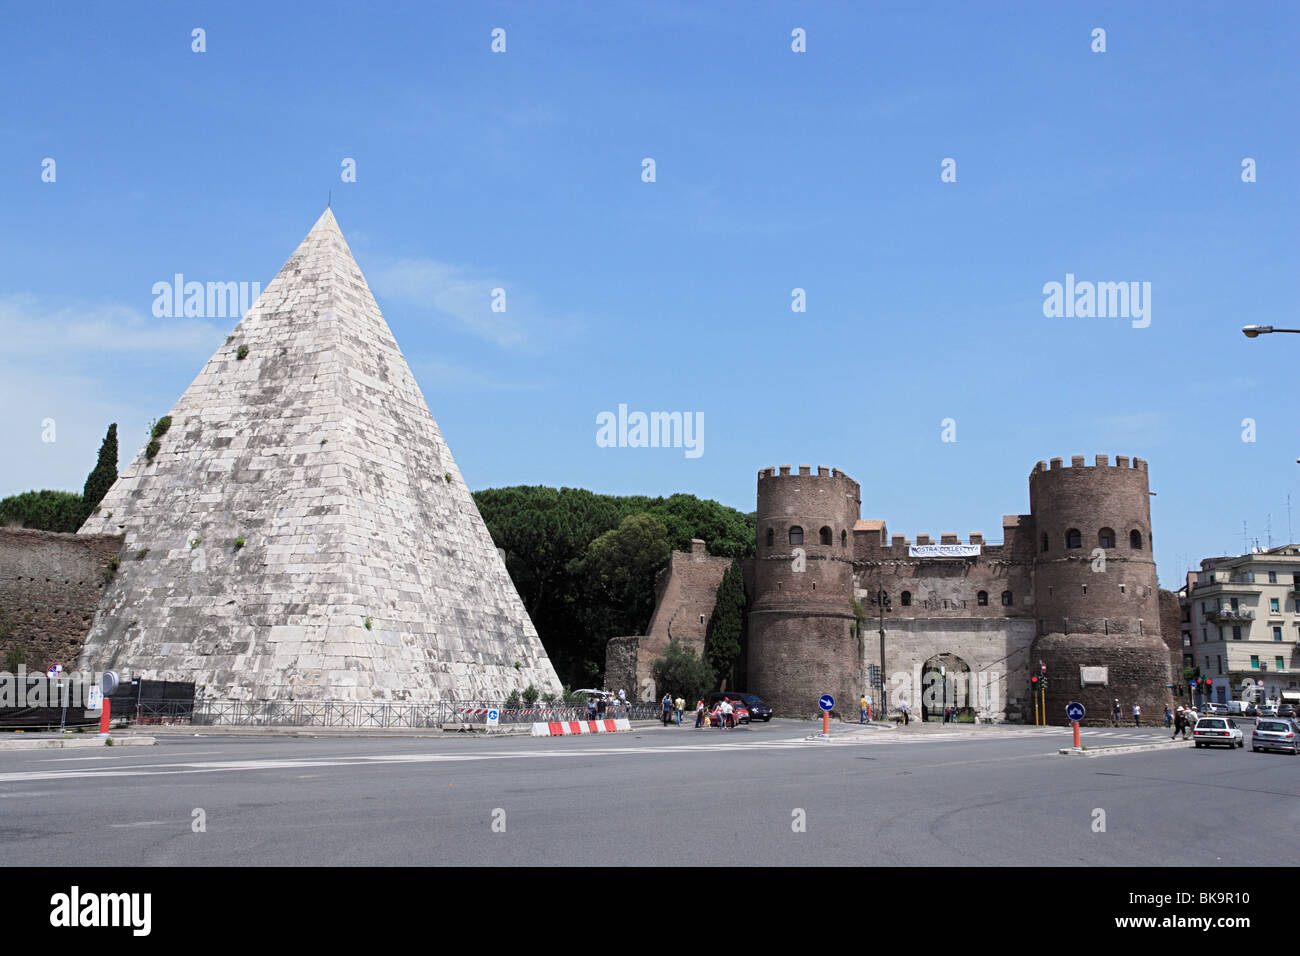 Pyramide de Cestius et Porta San Paolo, Rome, Italie Banque D'Images